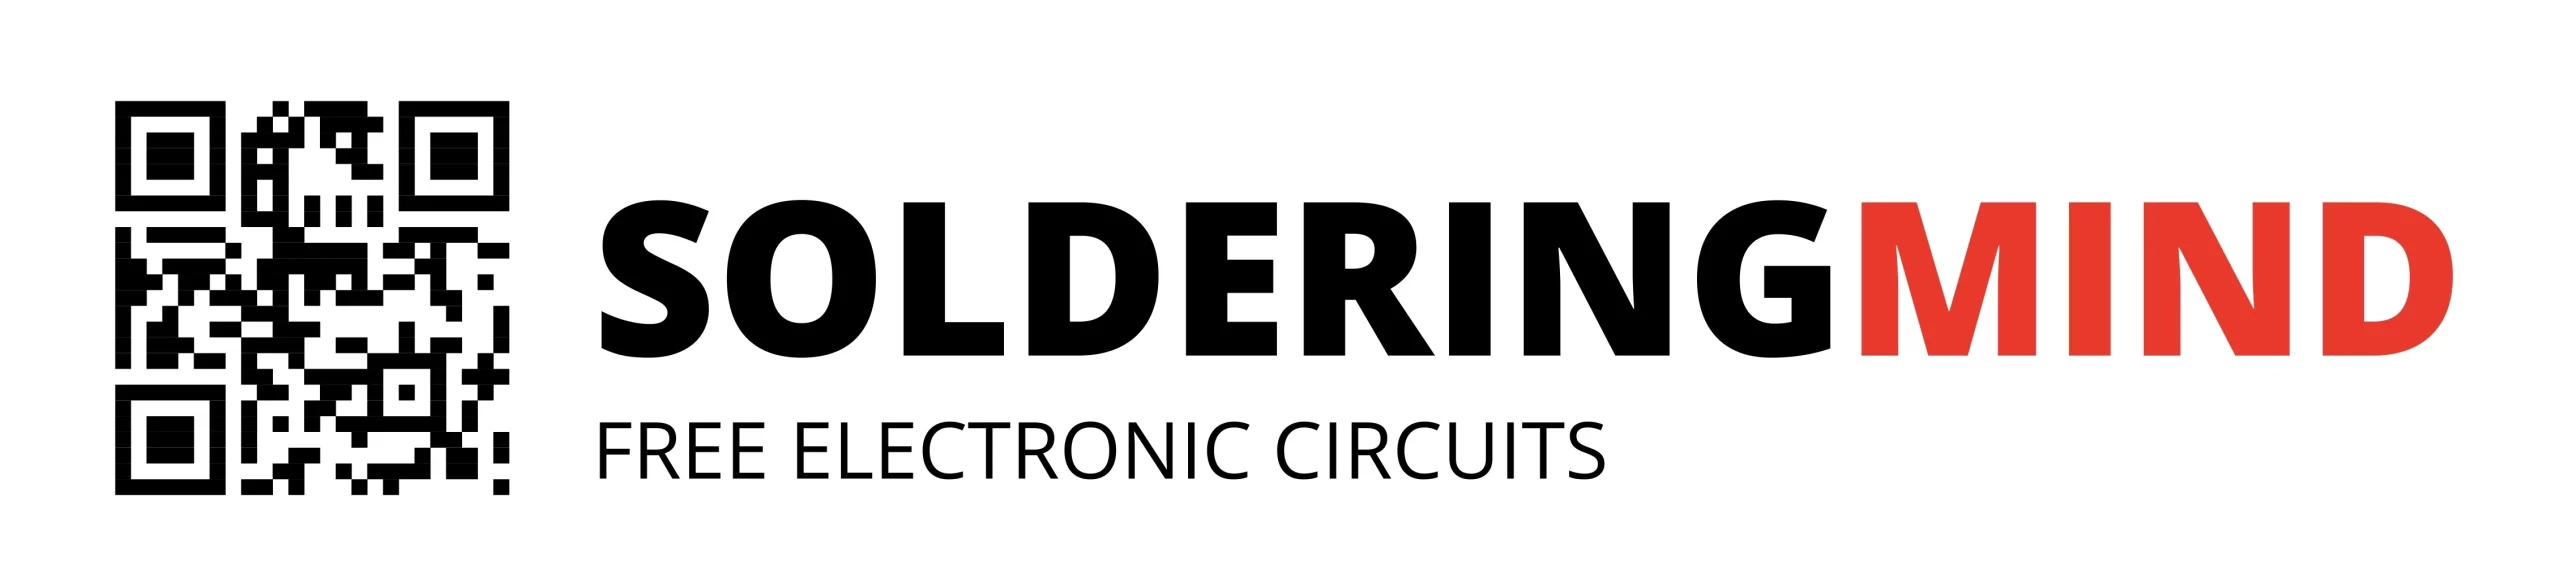 Official website logo of solderingmind.com